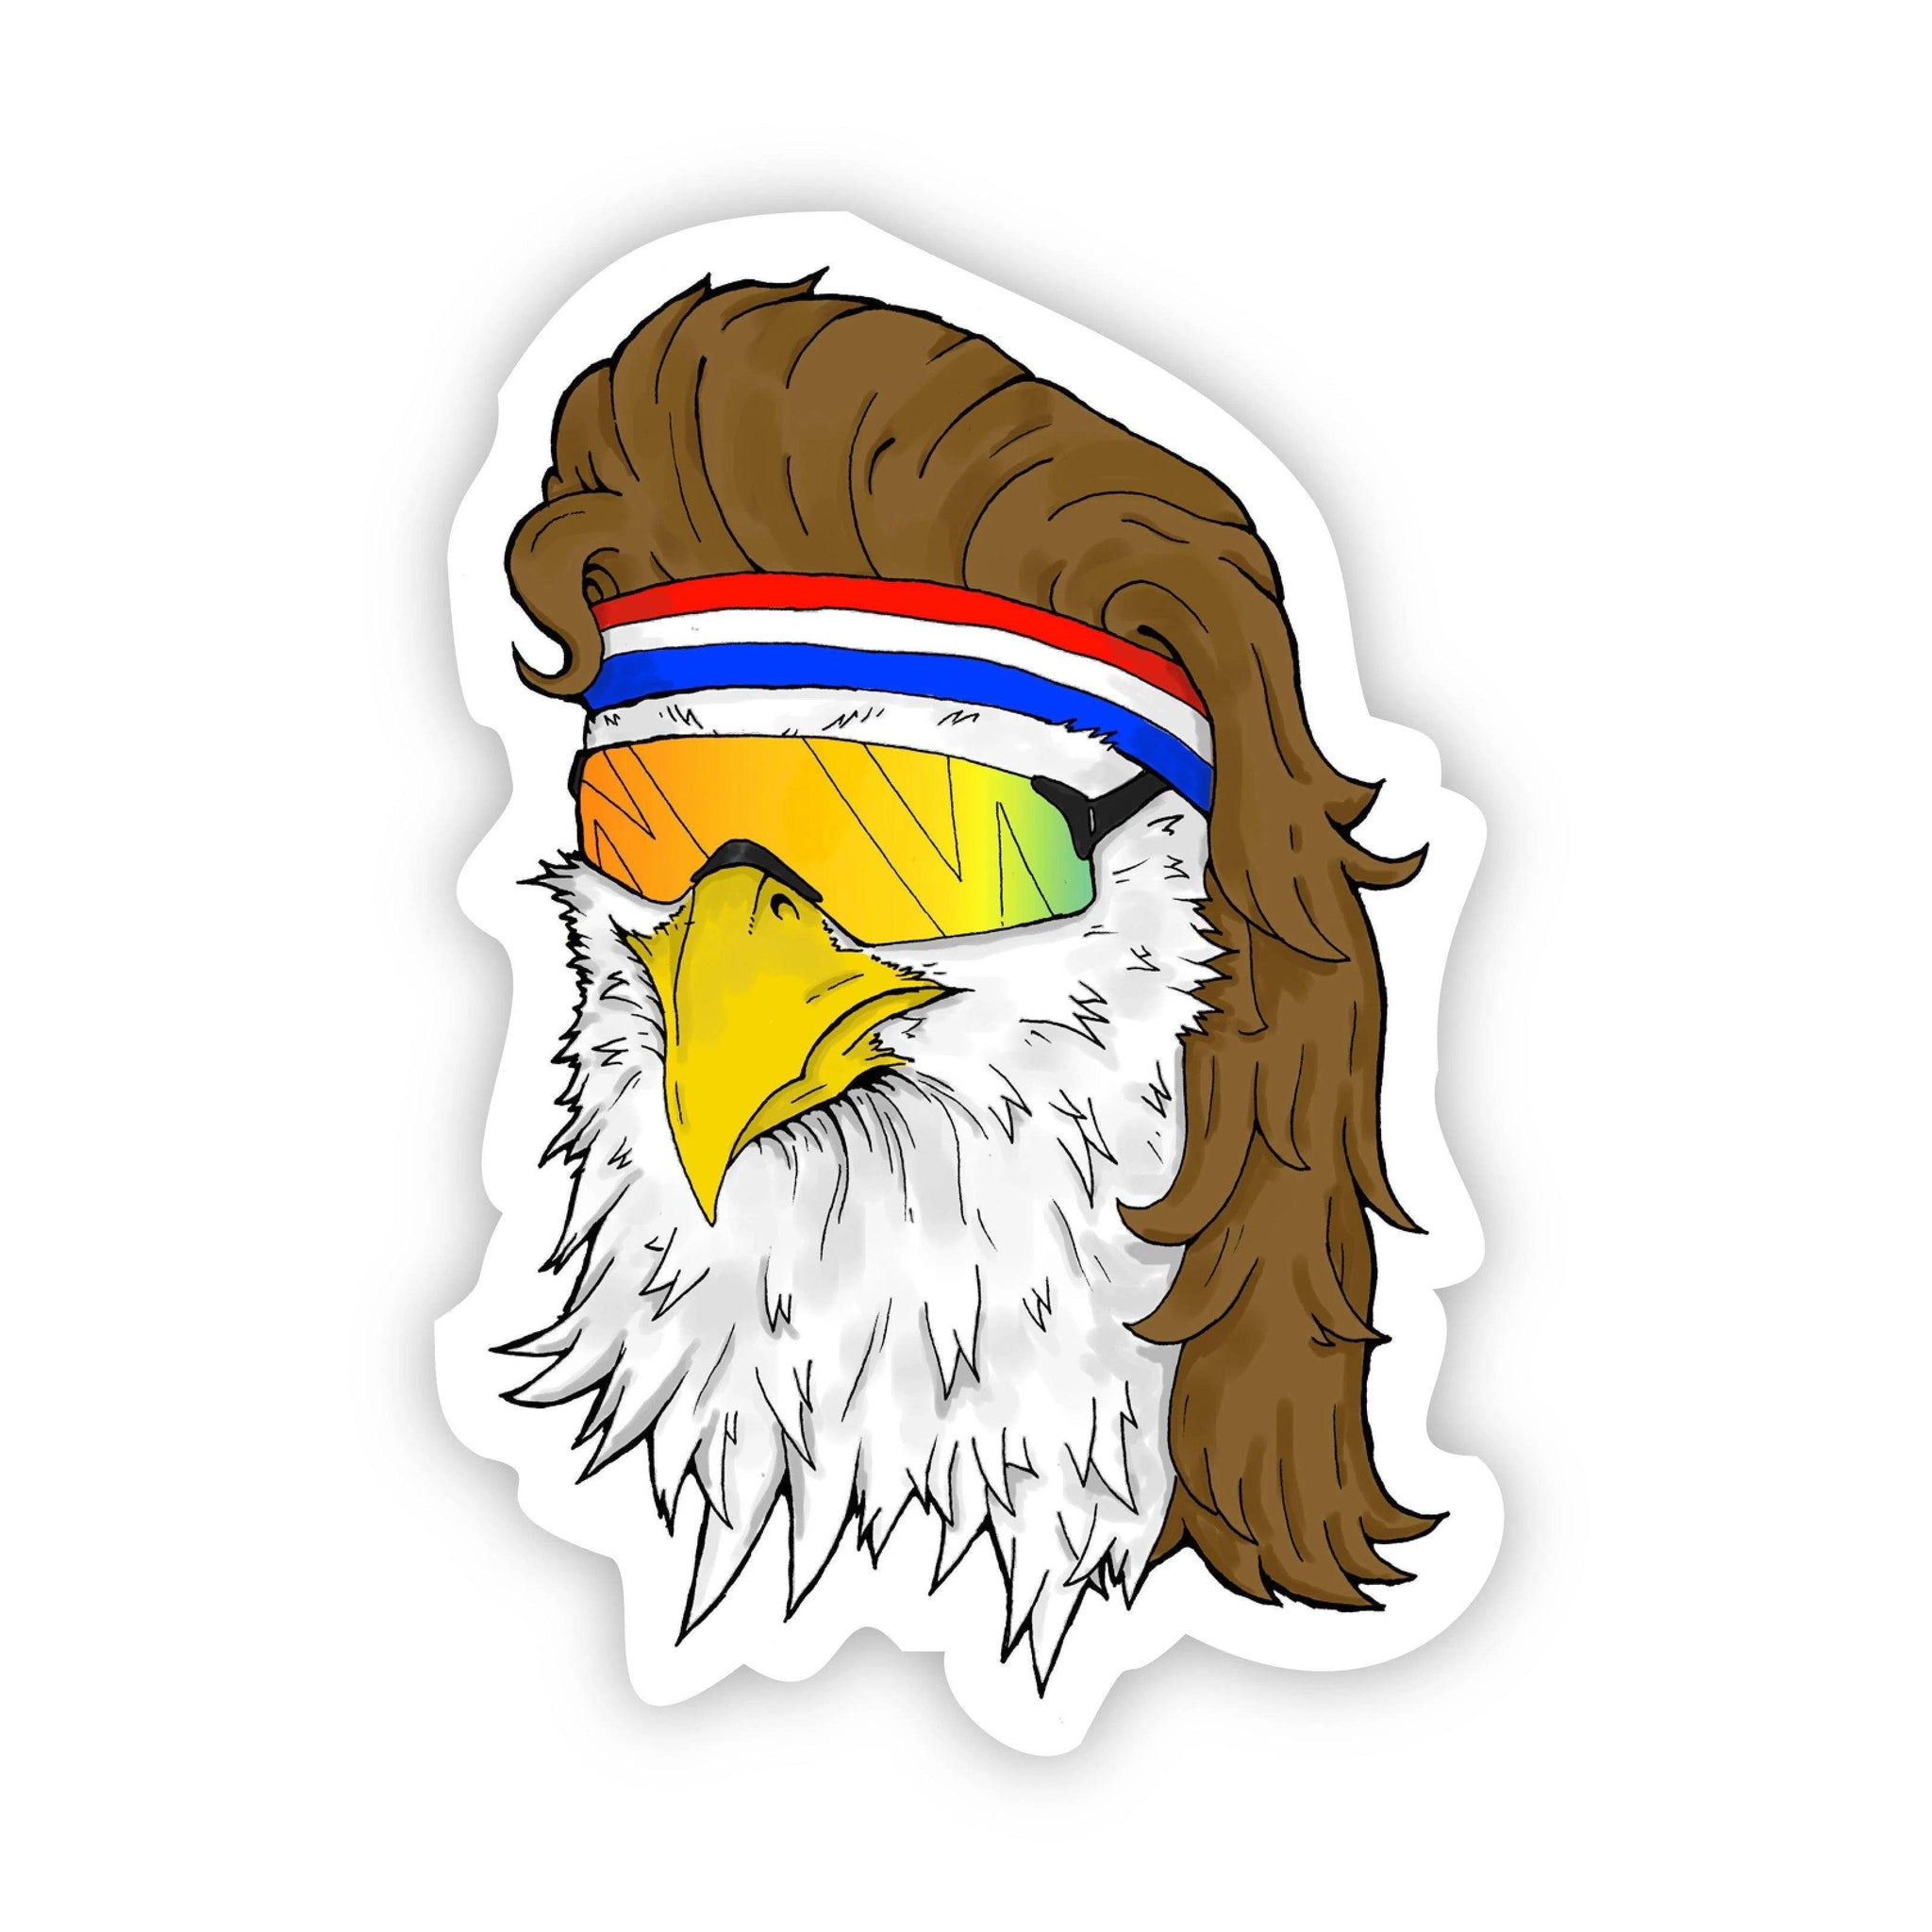 Merica Eagle Sticker